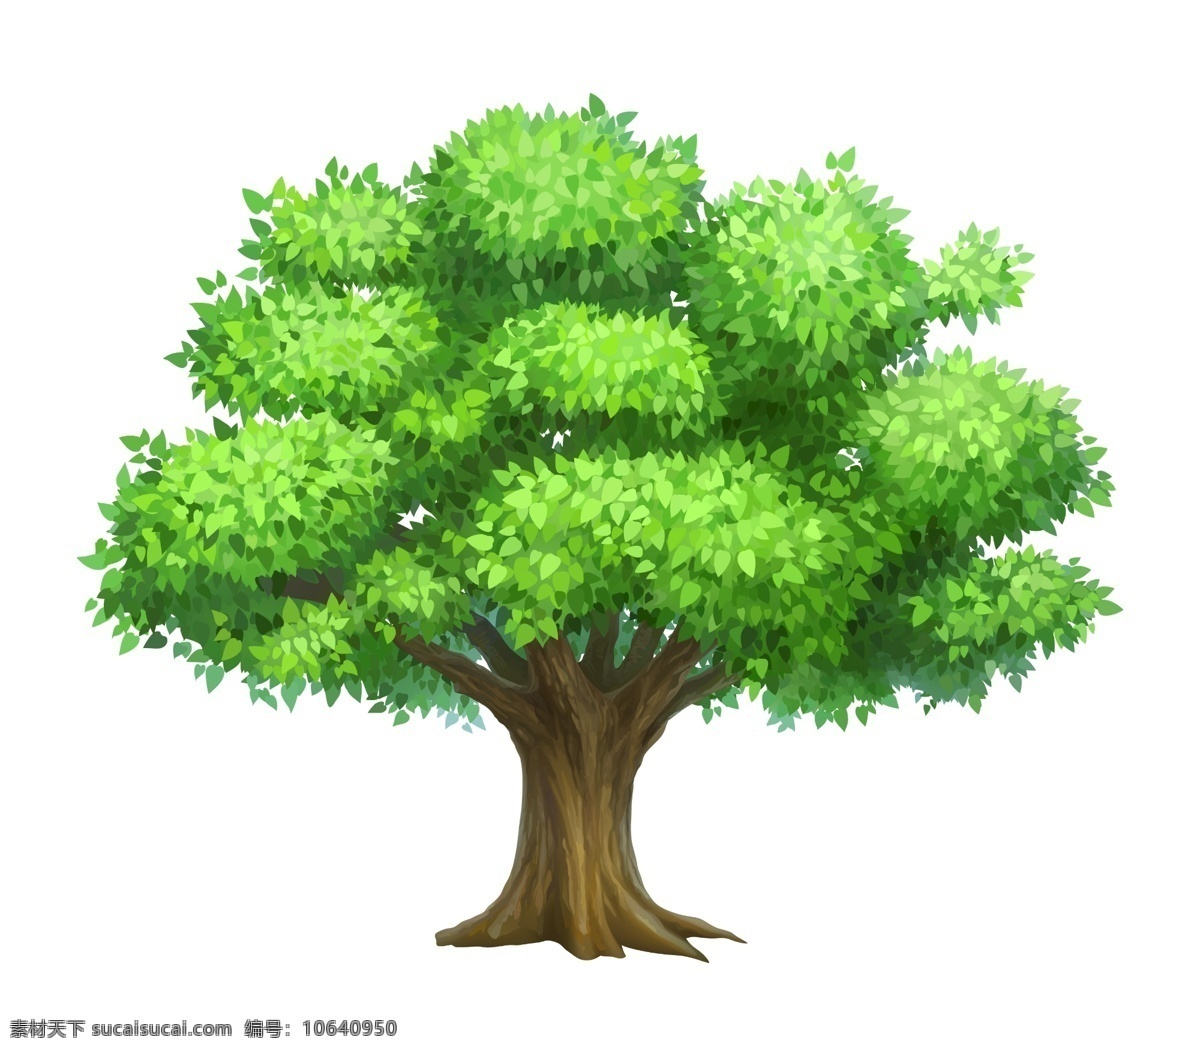 卡通树木 绿色 卡通树 卡通 大树 鼠绘 儿童节 树木 矢量树木 绿色树木 卡通大树 分层 源文件